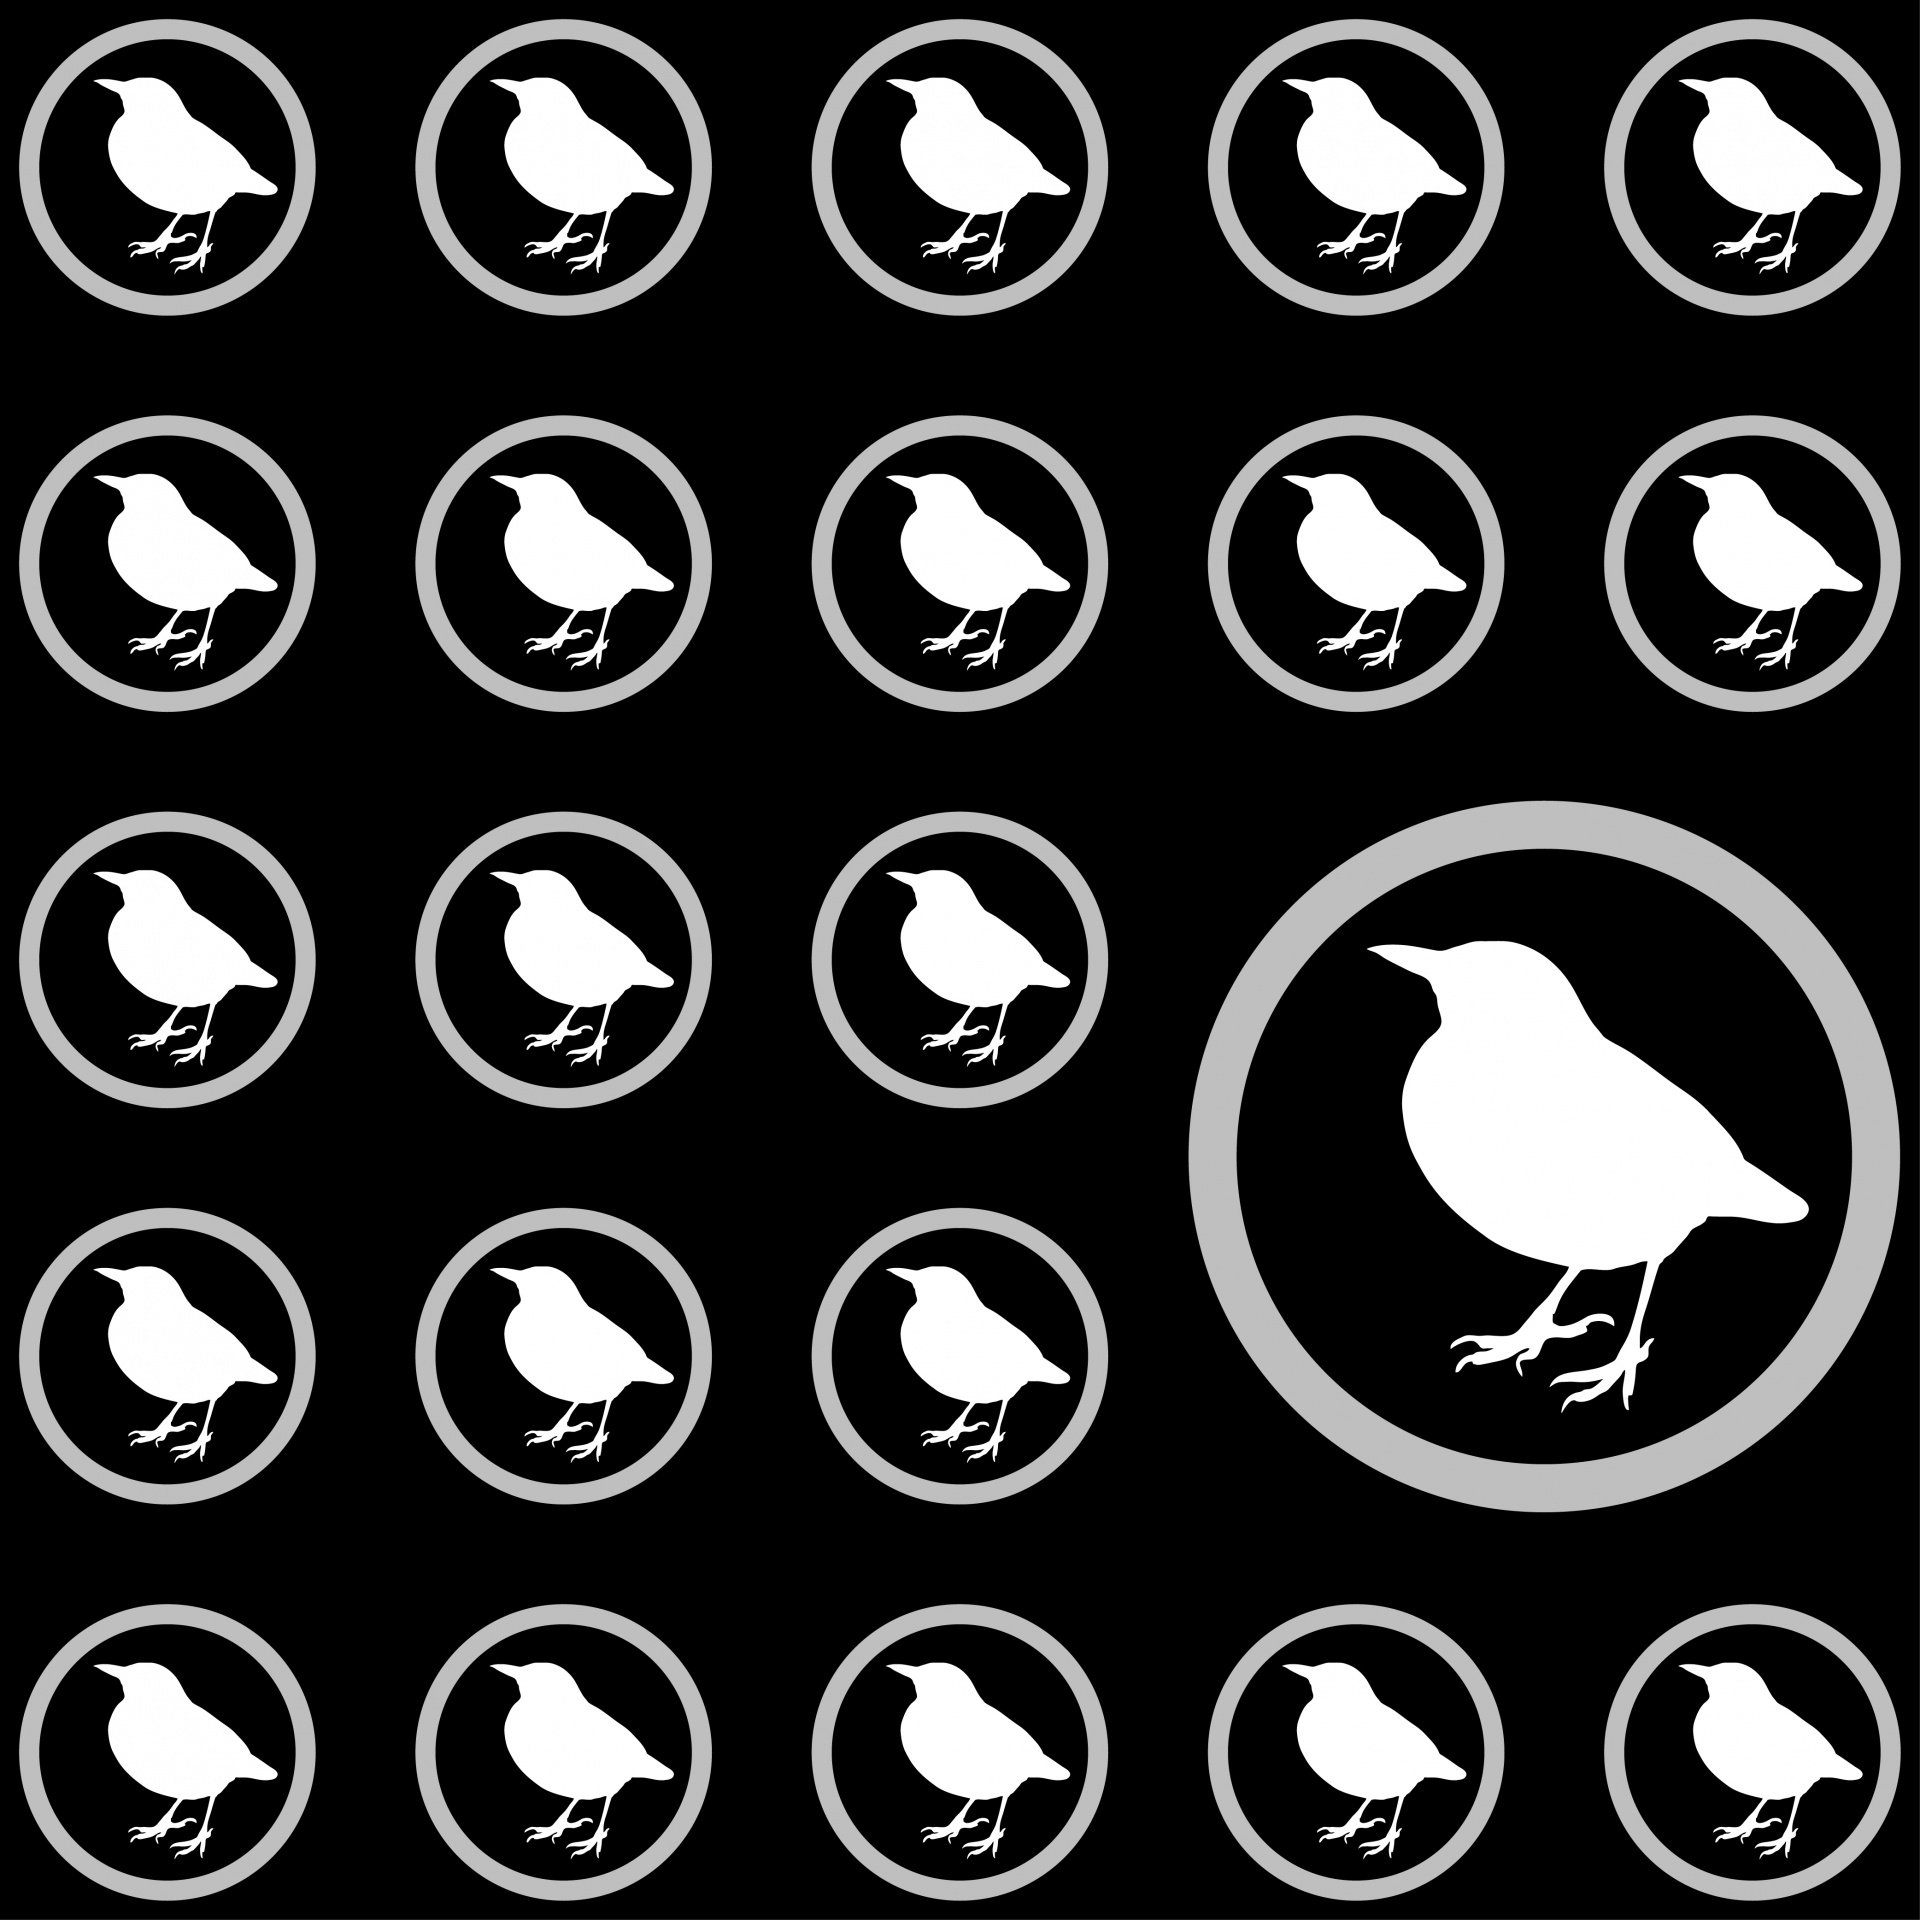 Blackbird wallpaper pattern background design